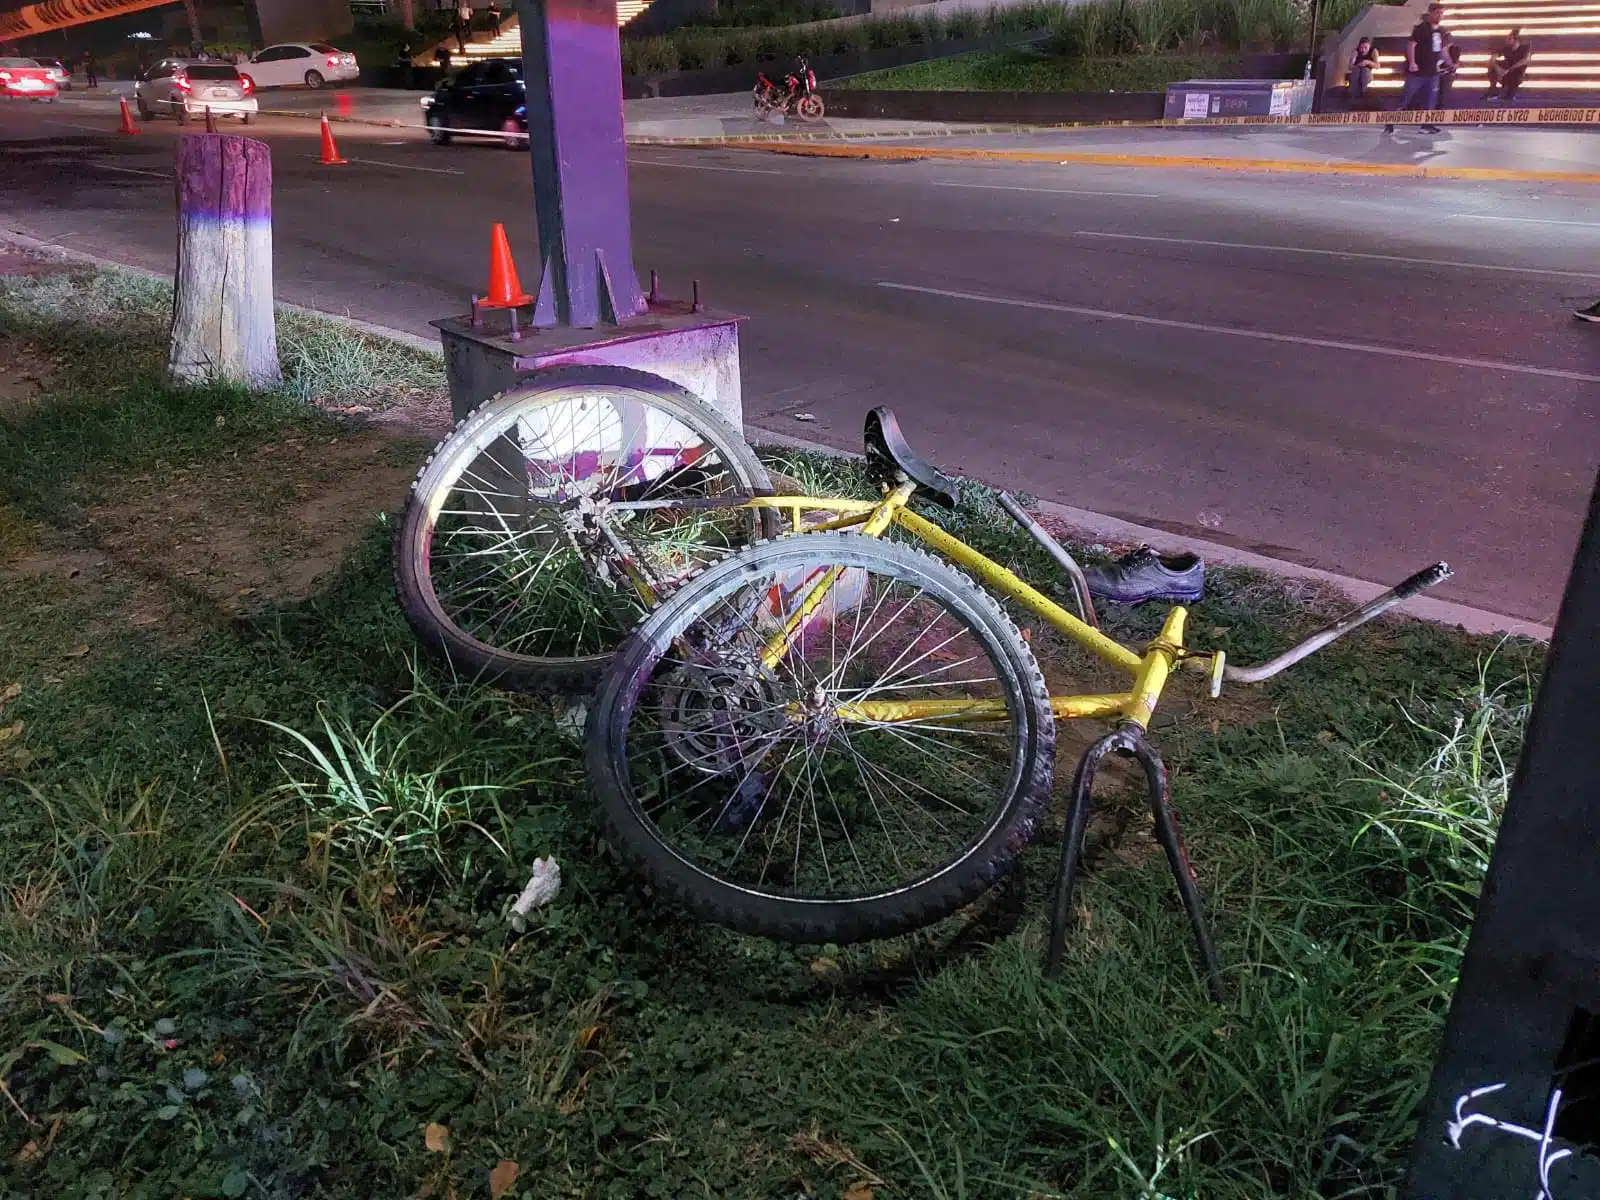 Bicicleta amarilla era conducida por adulto mayor atropellado en Culiacán